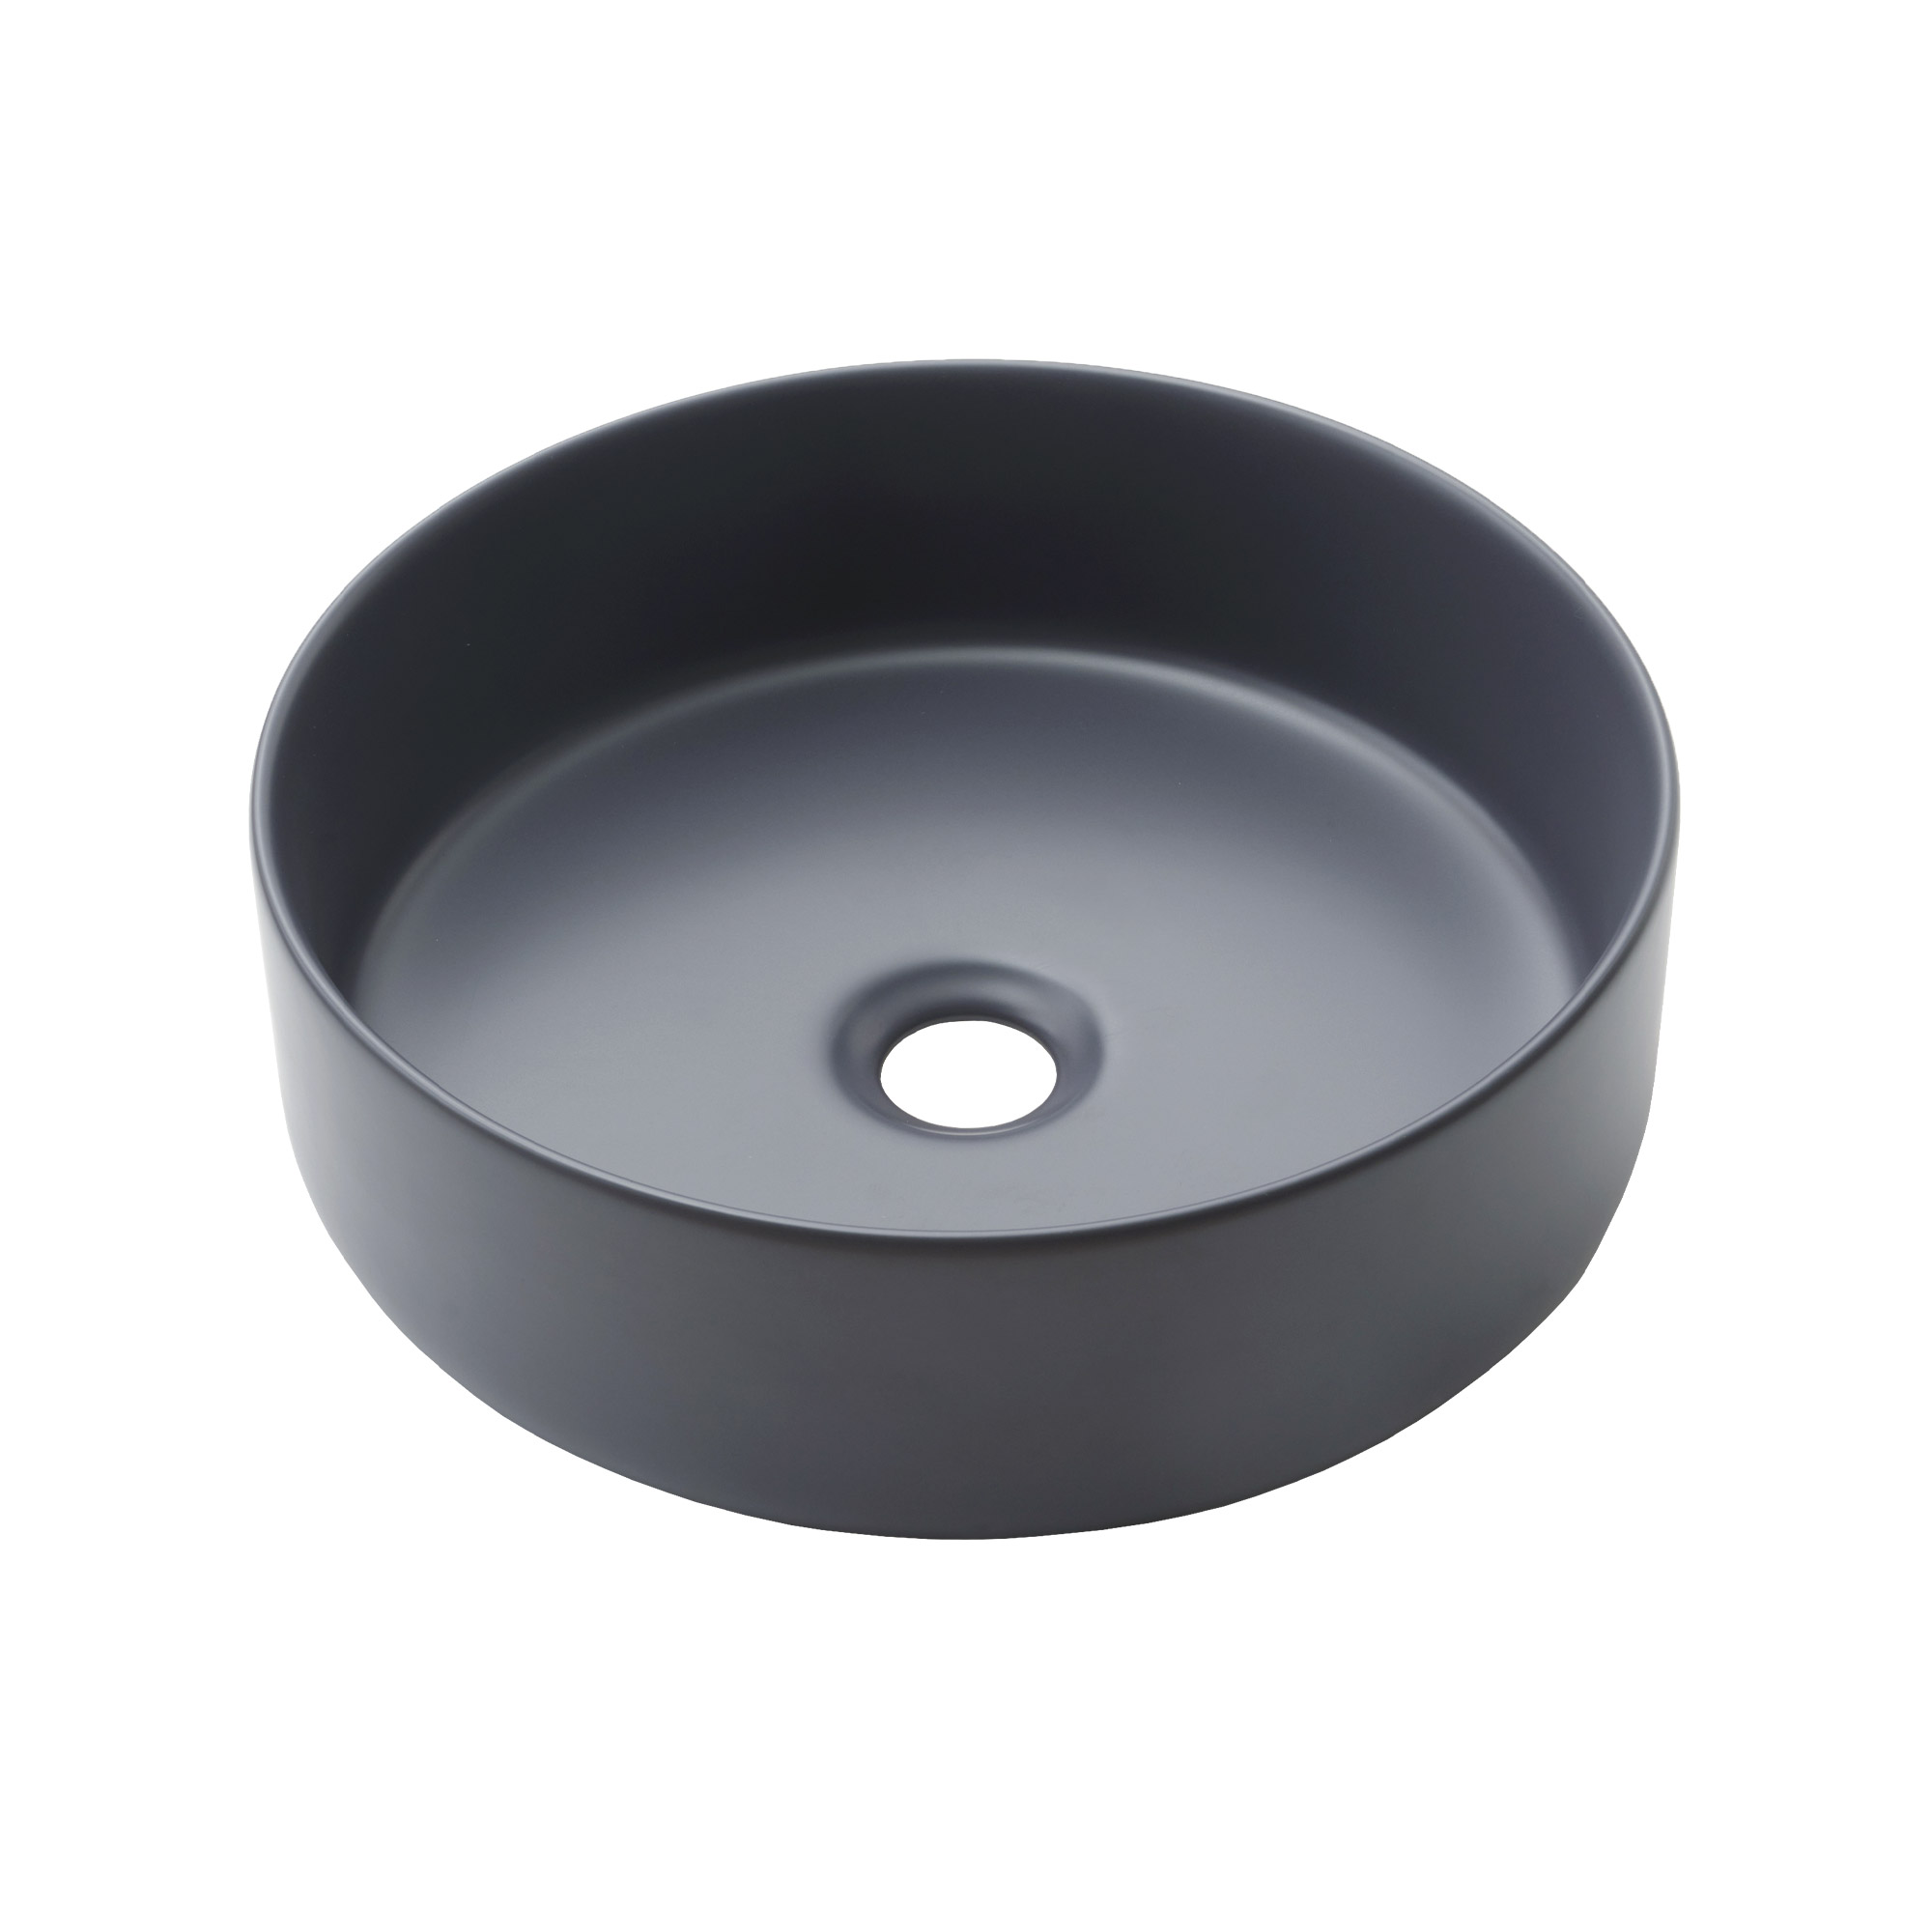 陶器の手洗い器 丸350 アズールグレー KB-PR012-04-G141 マットで空間になじみやすい質感です